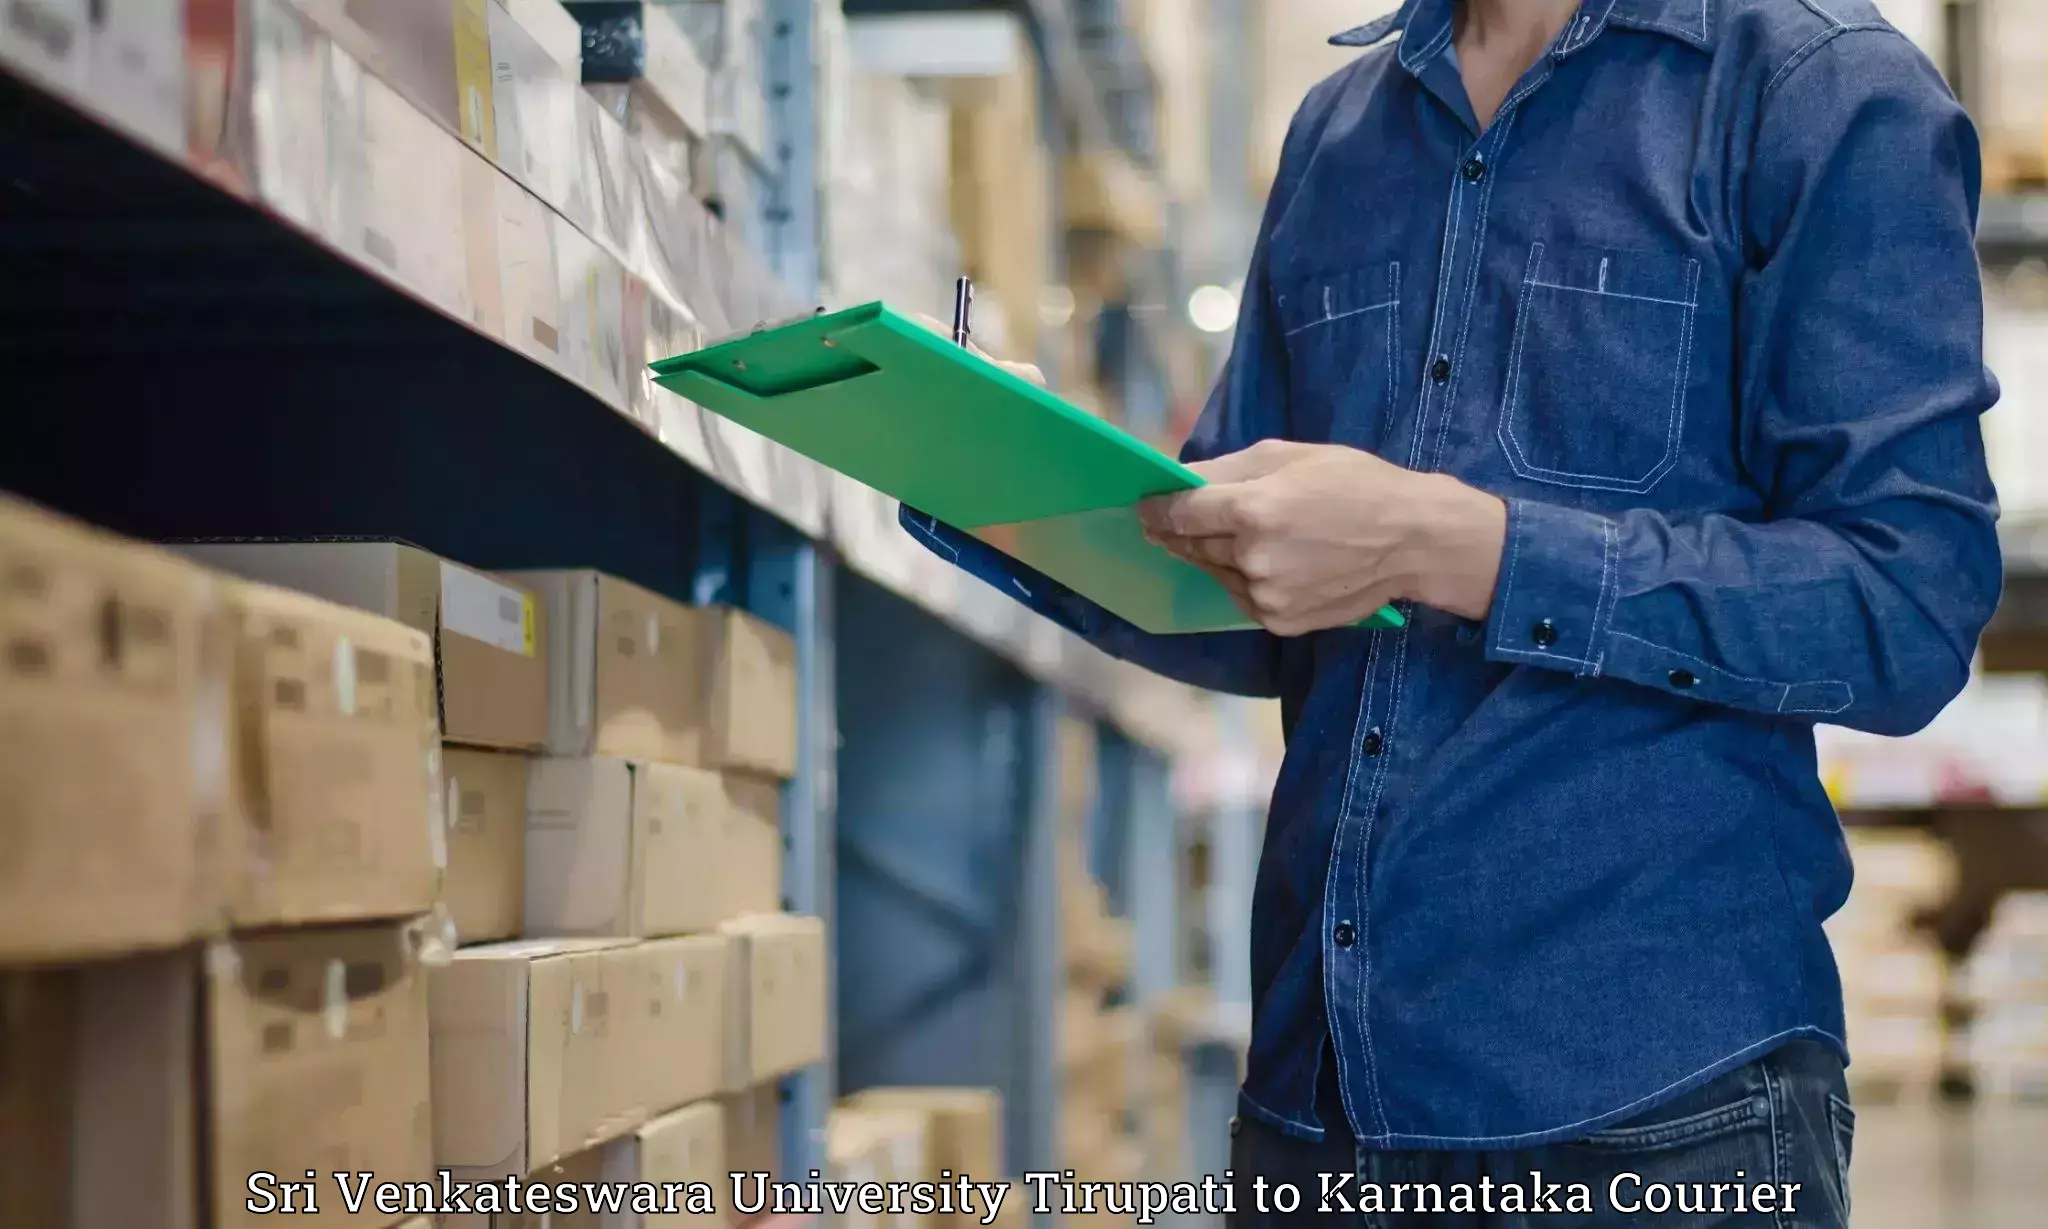 Single item baggage courier Sri Venkateswara University Tirupati to Karnataka